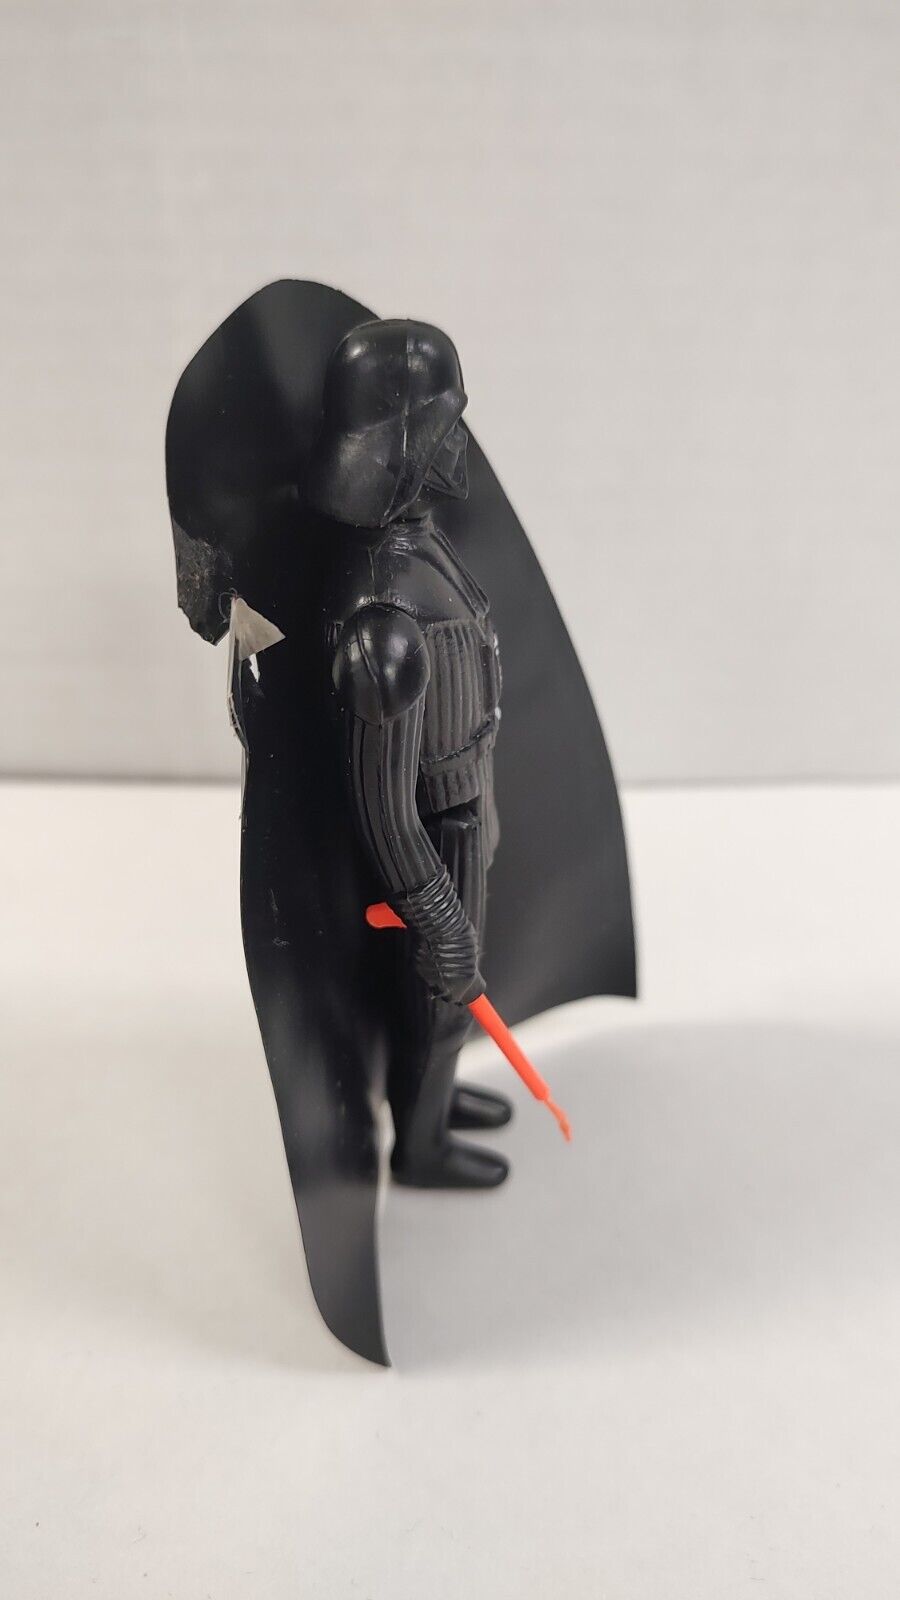 Vintage Star Wars 1977 Darth Vader Kenner Action Figure 3.75